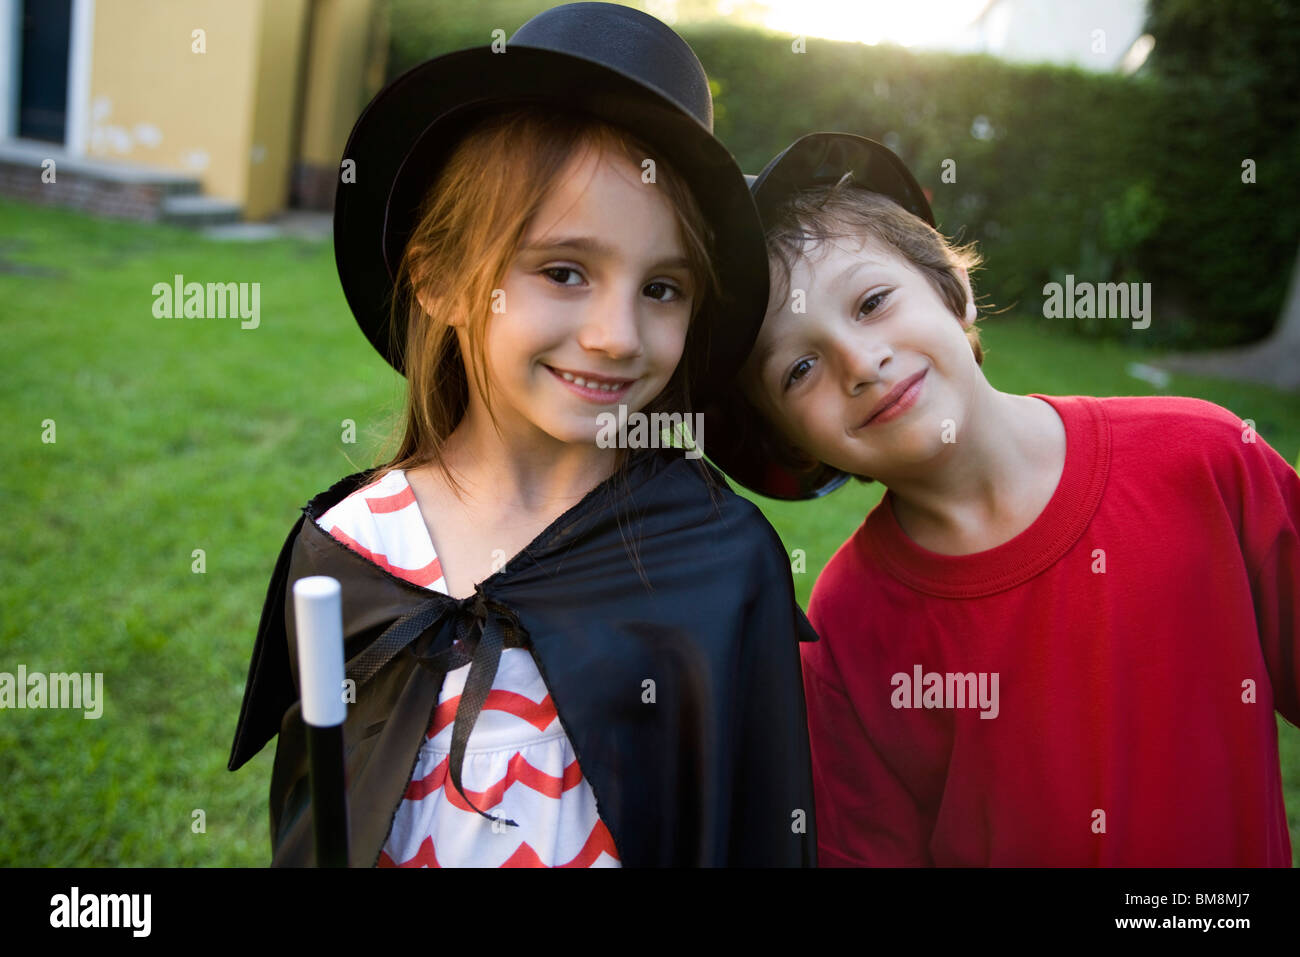 Children in costume, portrait Stock Photo